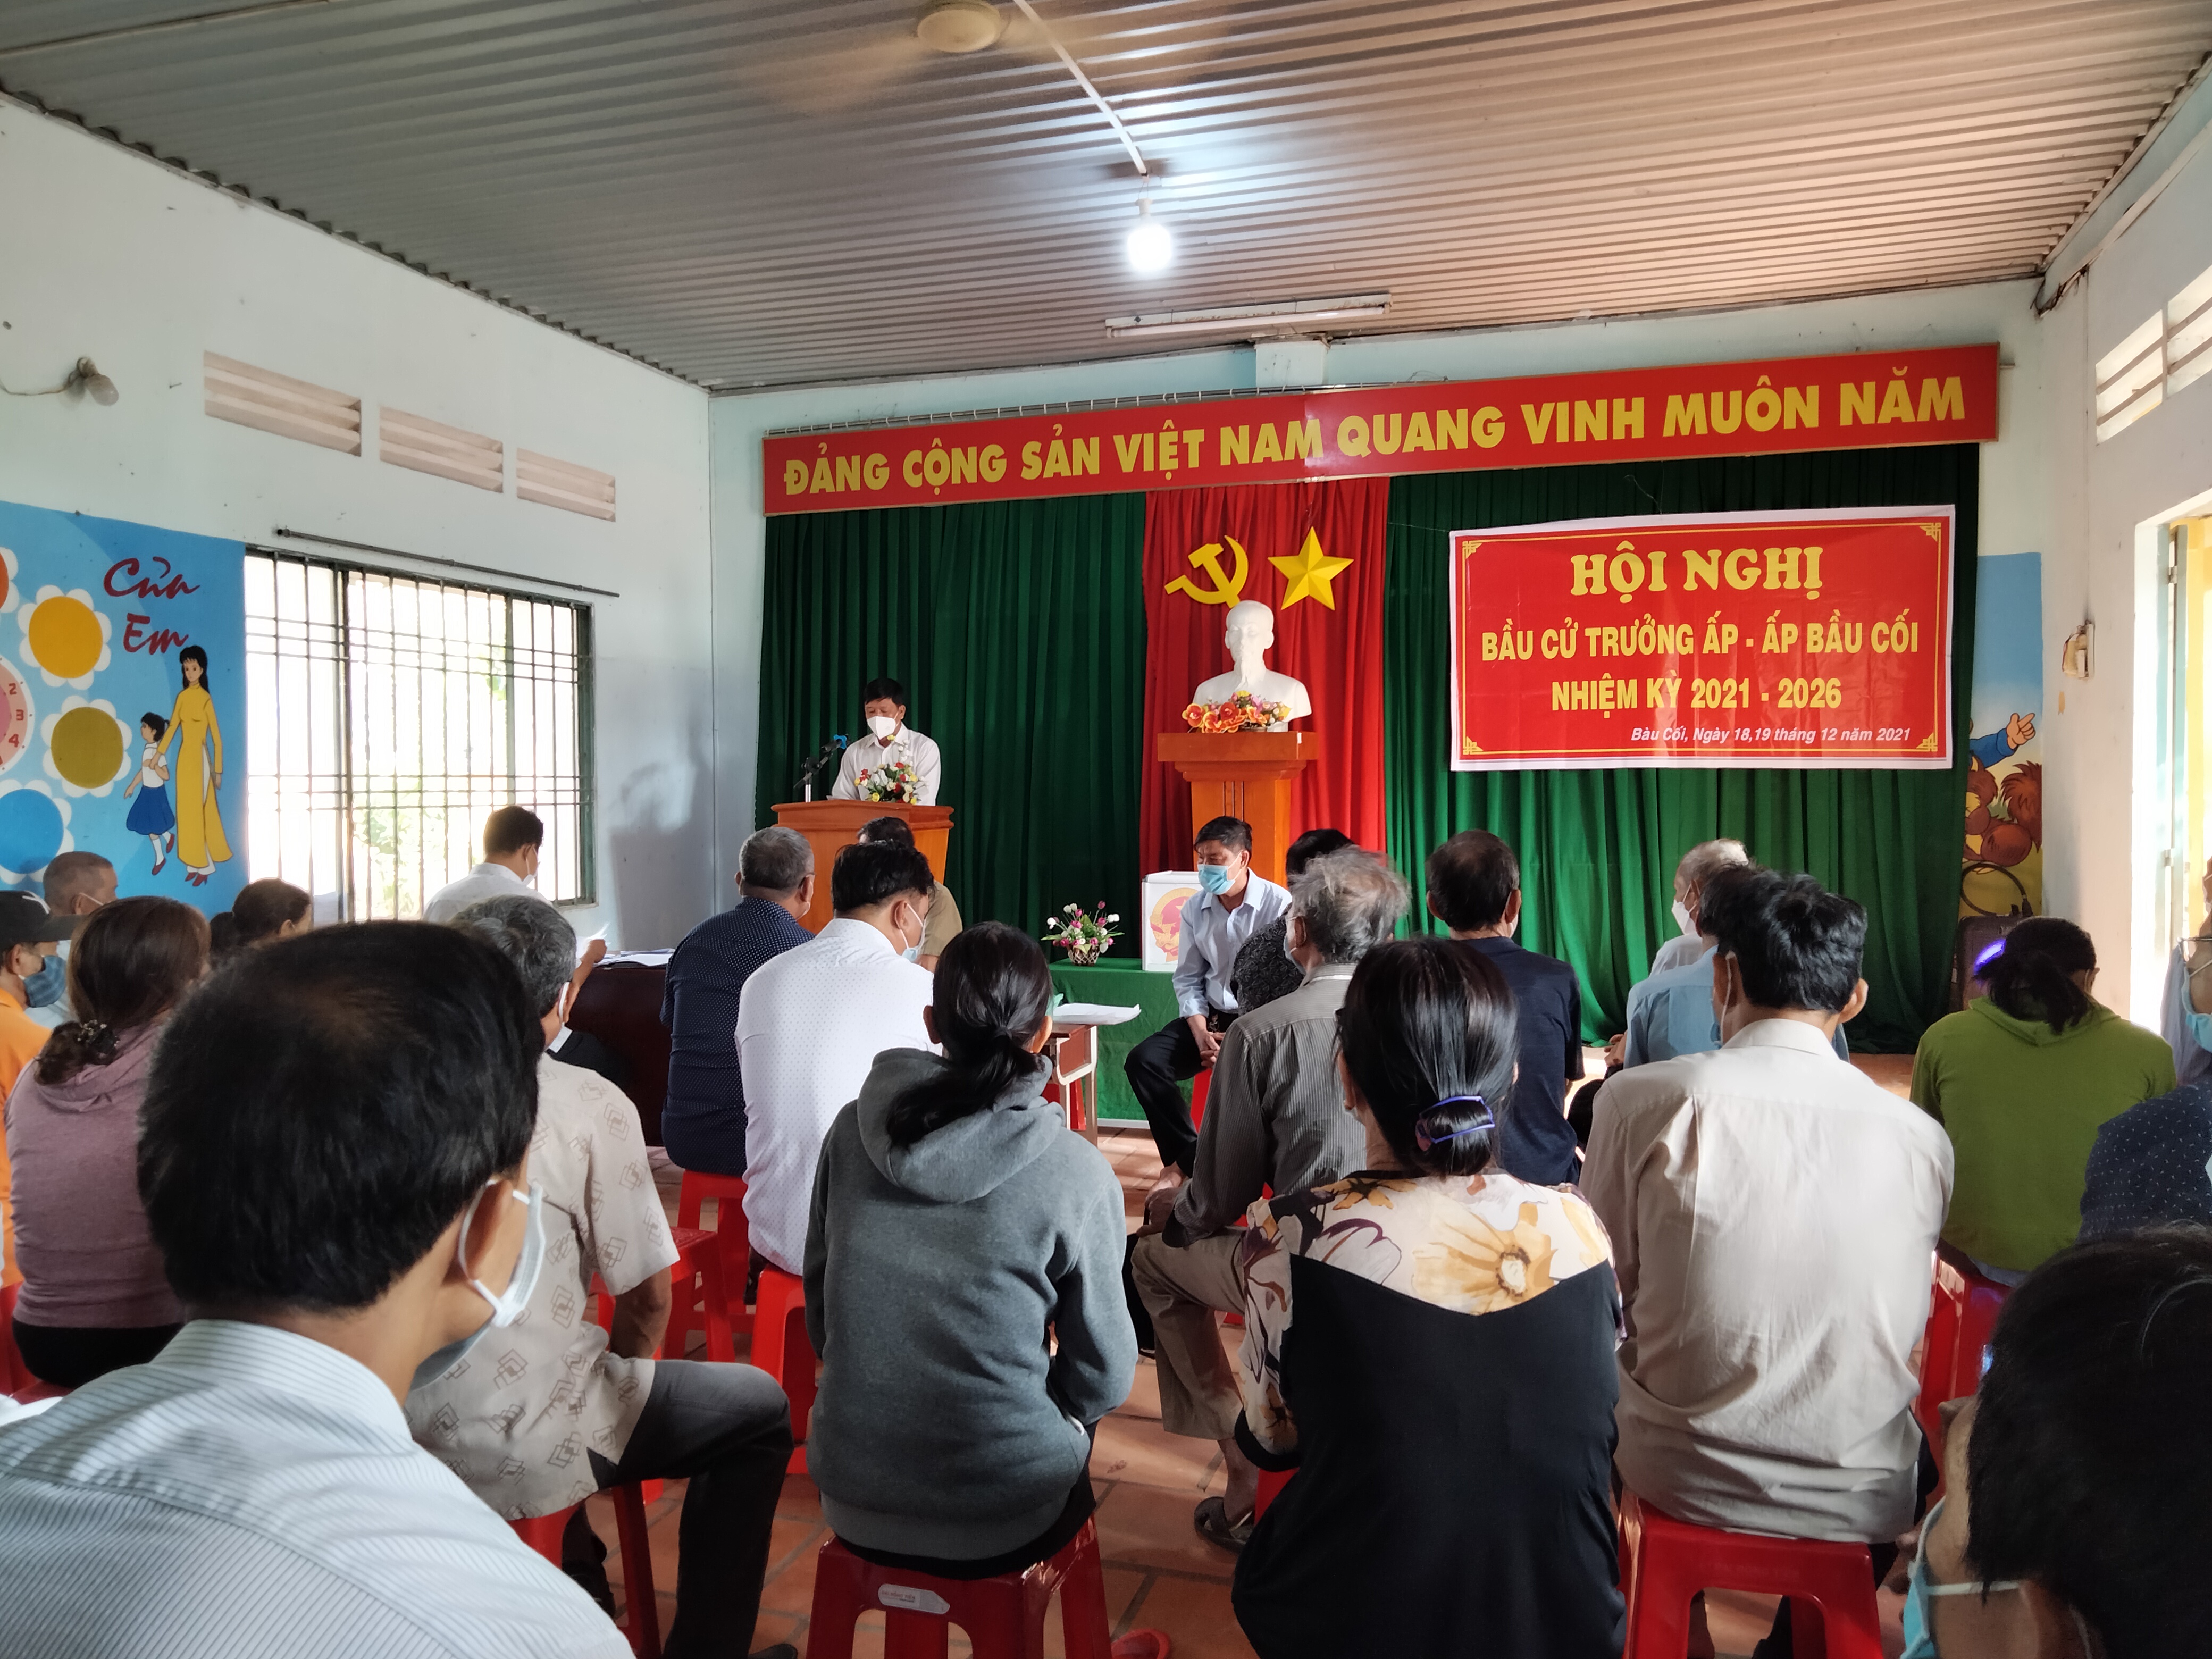 Ông Nguyễn Trí Hùng, Trưởng ấp Bàu Cối đương nhiệm thông qua báo cáo công tác nhiệm kỳ qua trước Hội nghị bầu cử.jpg